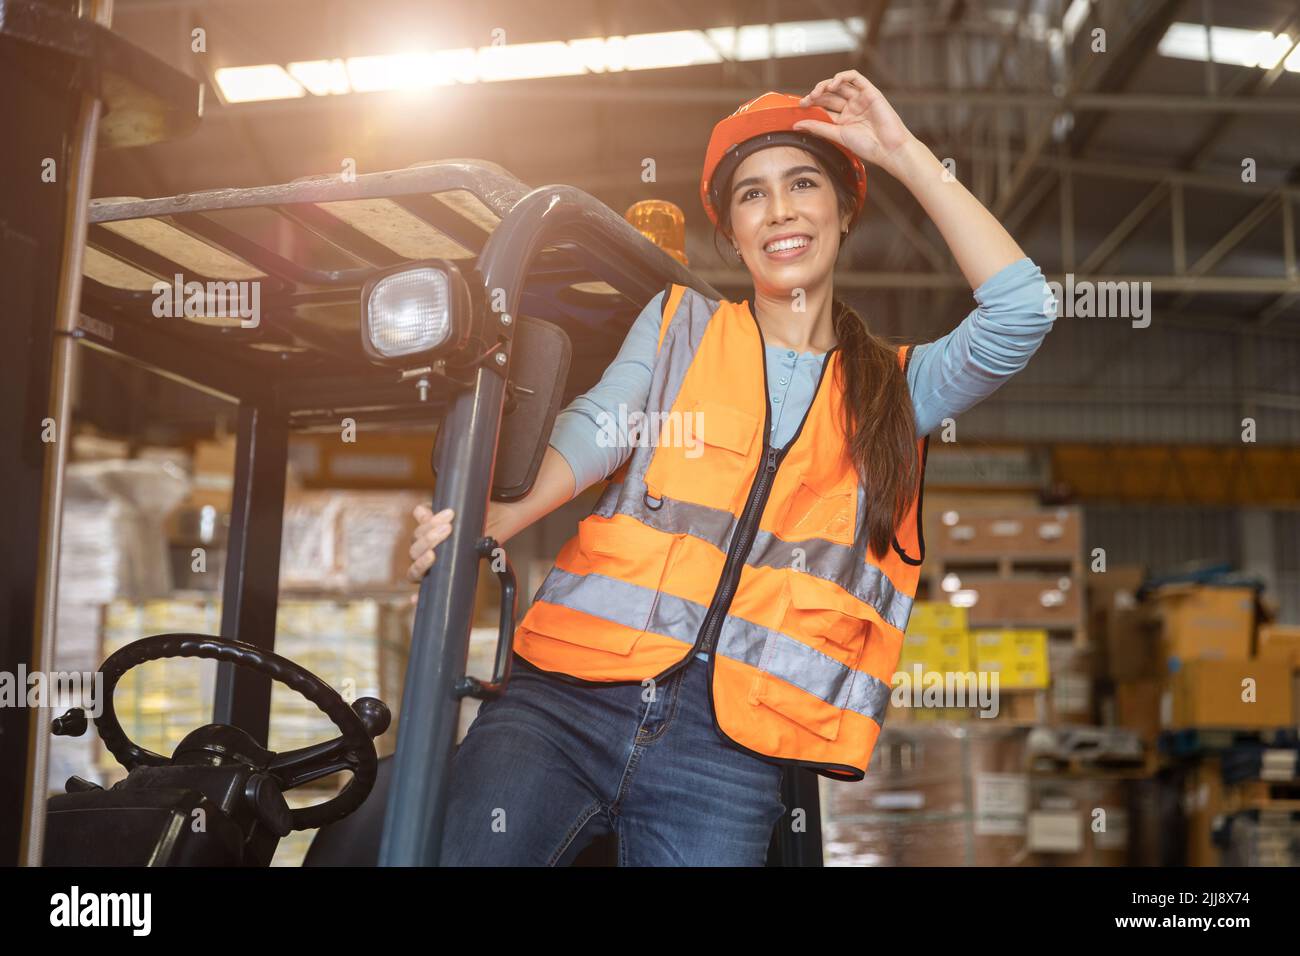 Felice donna lavoratore magazzino personale carrello elevatore a forche conducente felice sorridente godere di lavoro persone asiatiche. Foto Stock